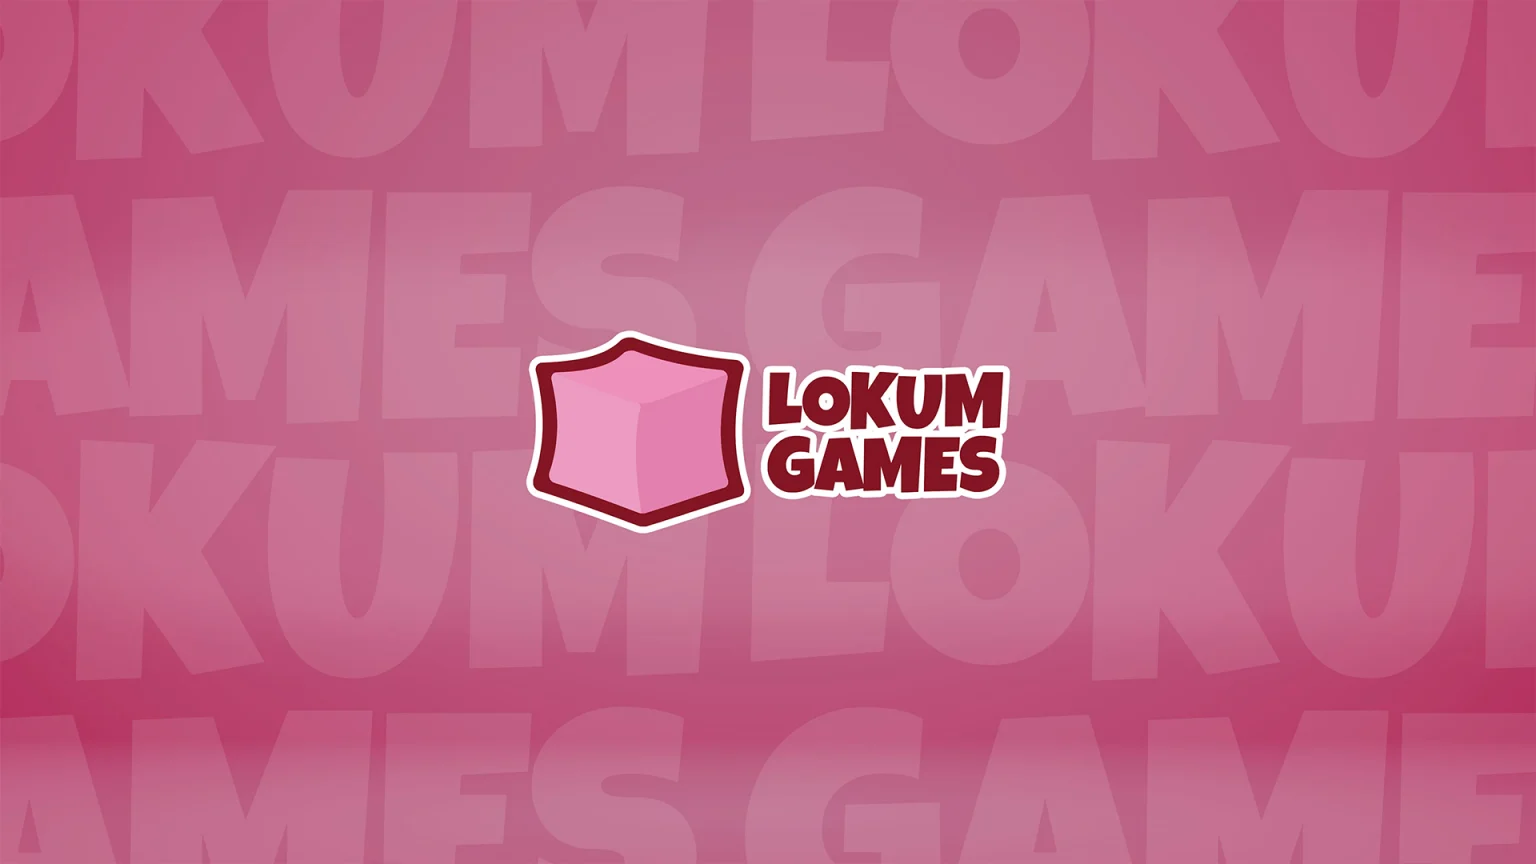 Yerli oyun stüdyosu Lokum Games, Boğaziçi Ventures ve APY Ventures liderliğinde yatırım aldı